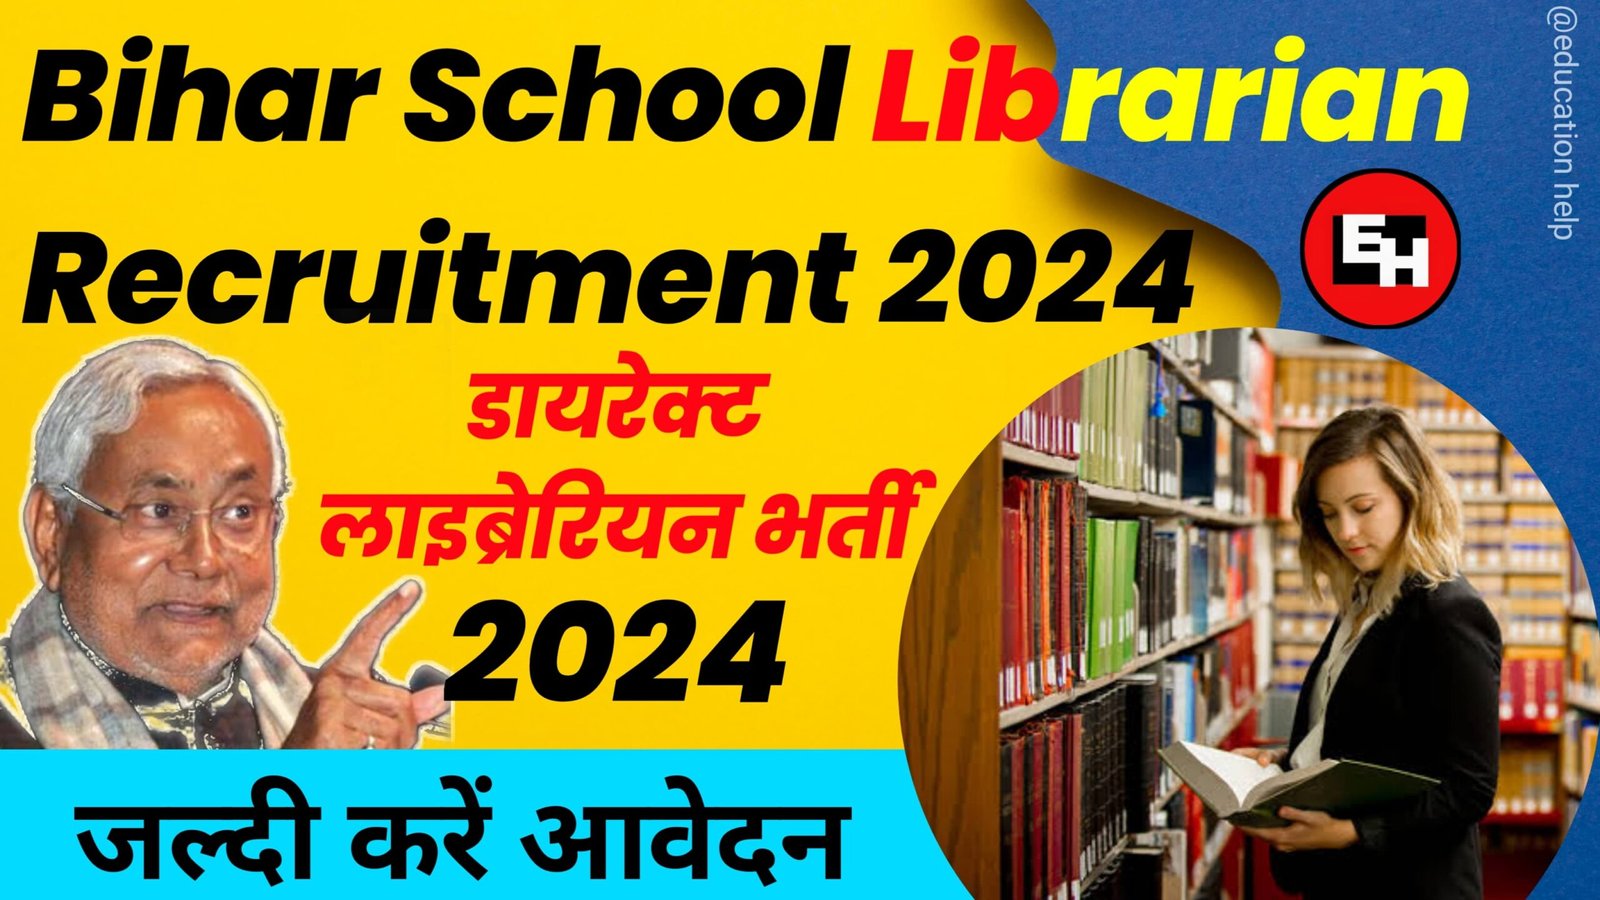 Bihar School Librarian Recruitment 2024, बंपर पदो पर निकली गई डायरेक्ट लाइब्रेरियन भर्ती योजना 2024, जानें कैसे करें आवेदन